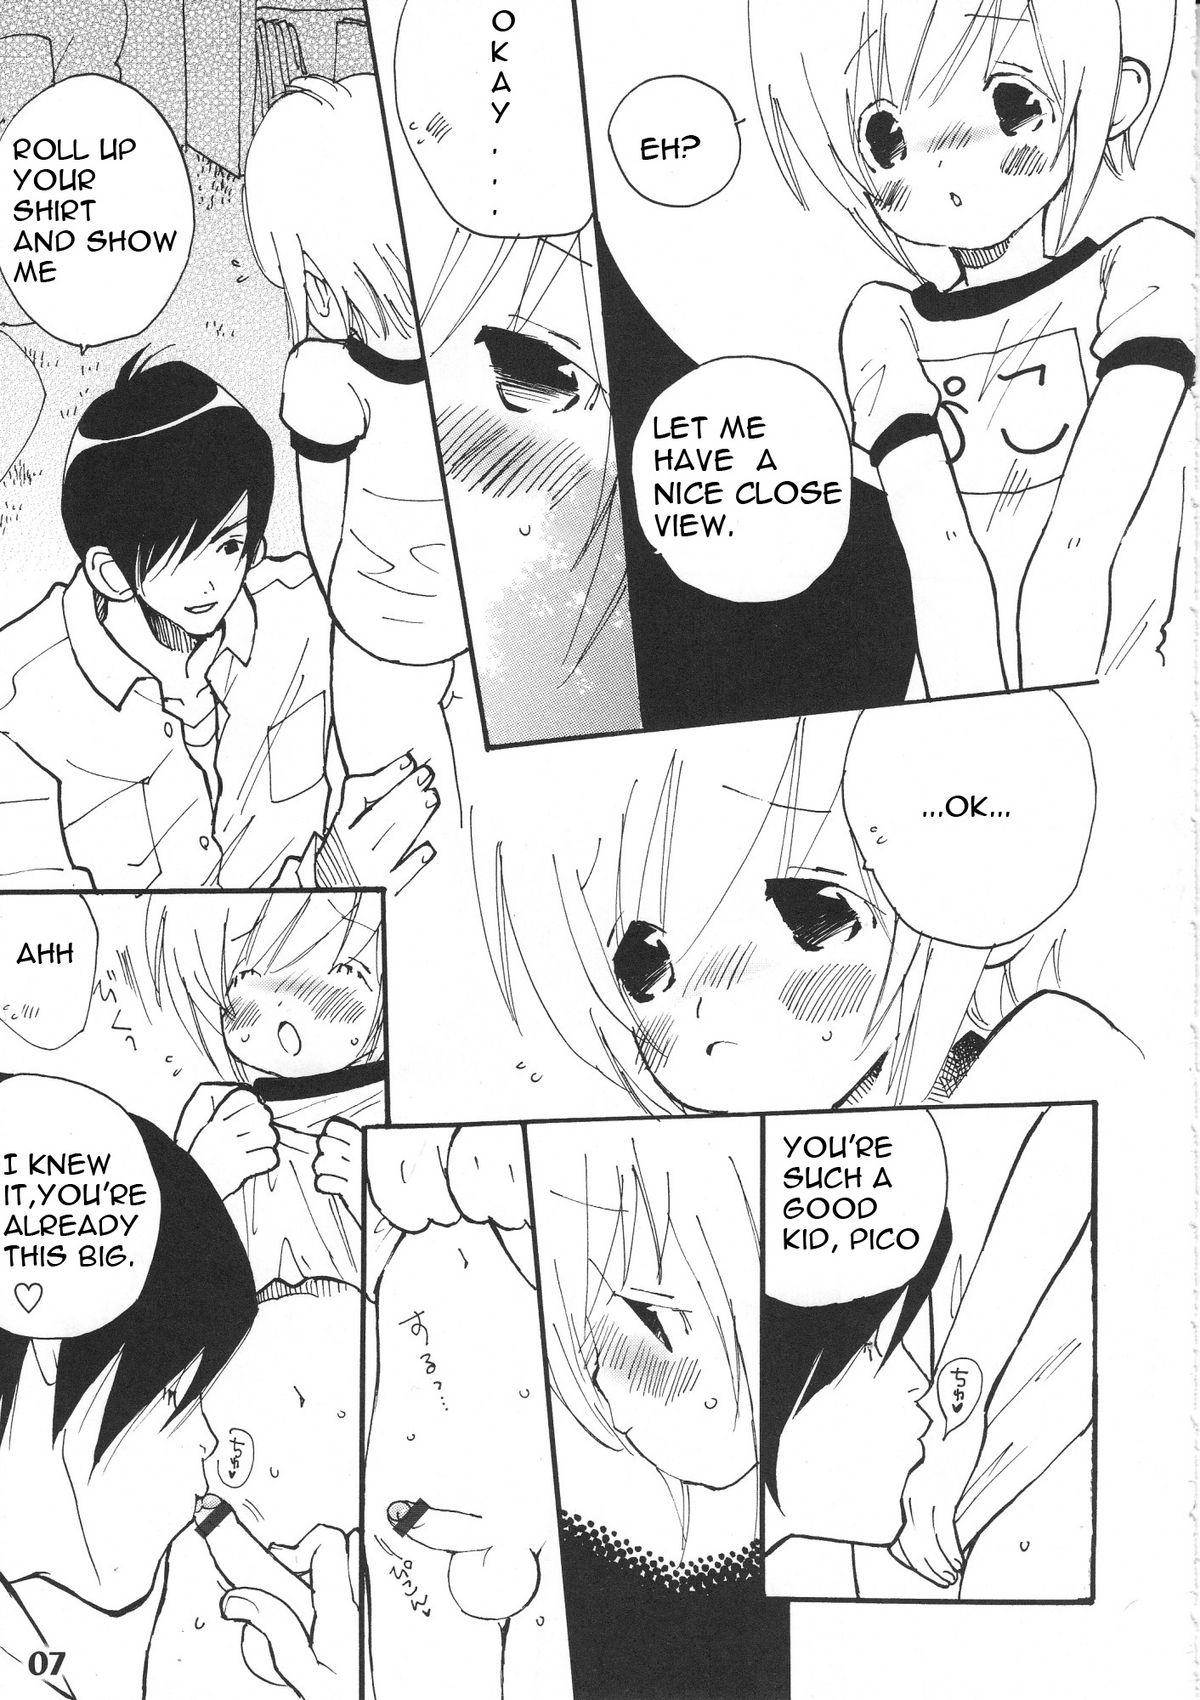 Little Bokutachi! Shotappuru!! - Boku no pico Sex - Page 7